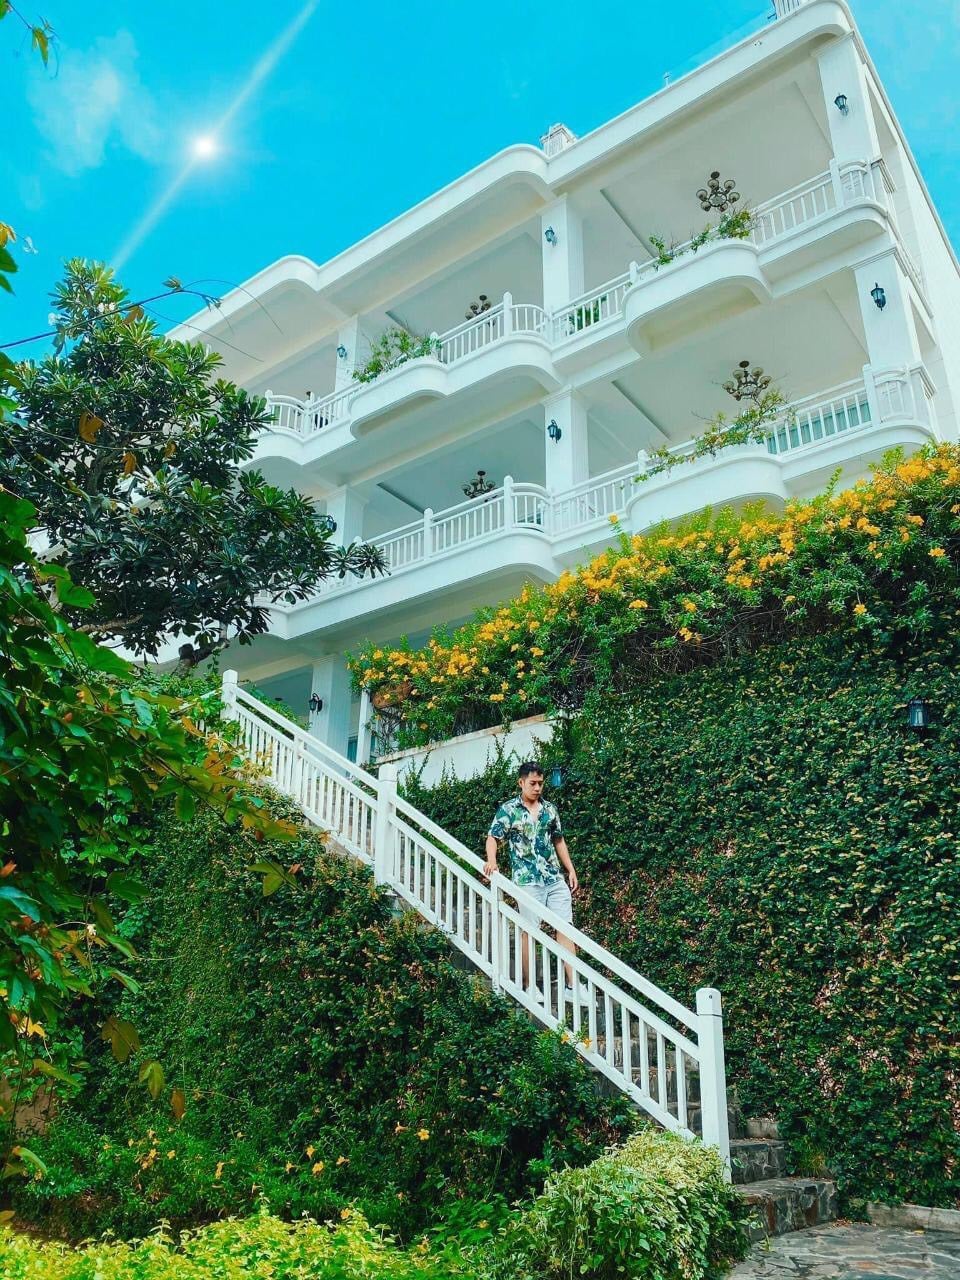 Léman Cap Resort & Spa khá lãng mạn khi được xây ở vị trí dọc sườn núi sát biển.